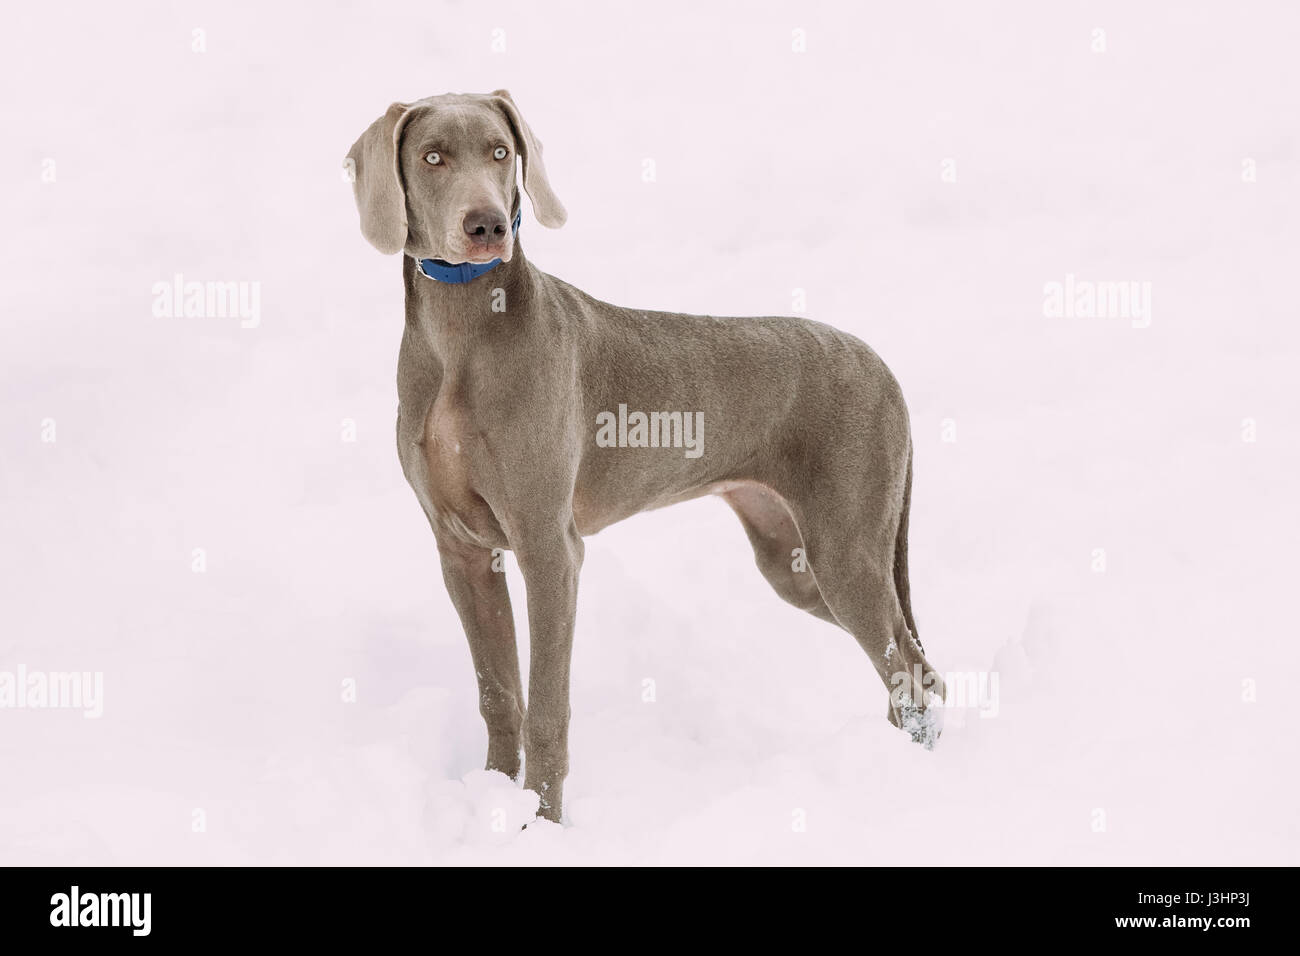 Wunderschöne Weimaraner Hund am Wintertag im Schnee stehen.  Großer Hund Nachzuchten für die Jagd. Die Weimaraner ist ein universell einsetzbares Jagdhund. Stockfoto